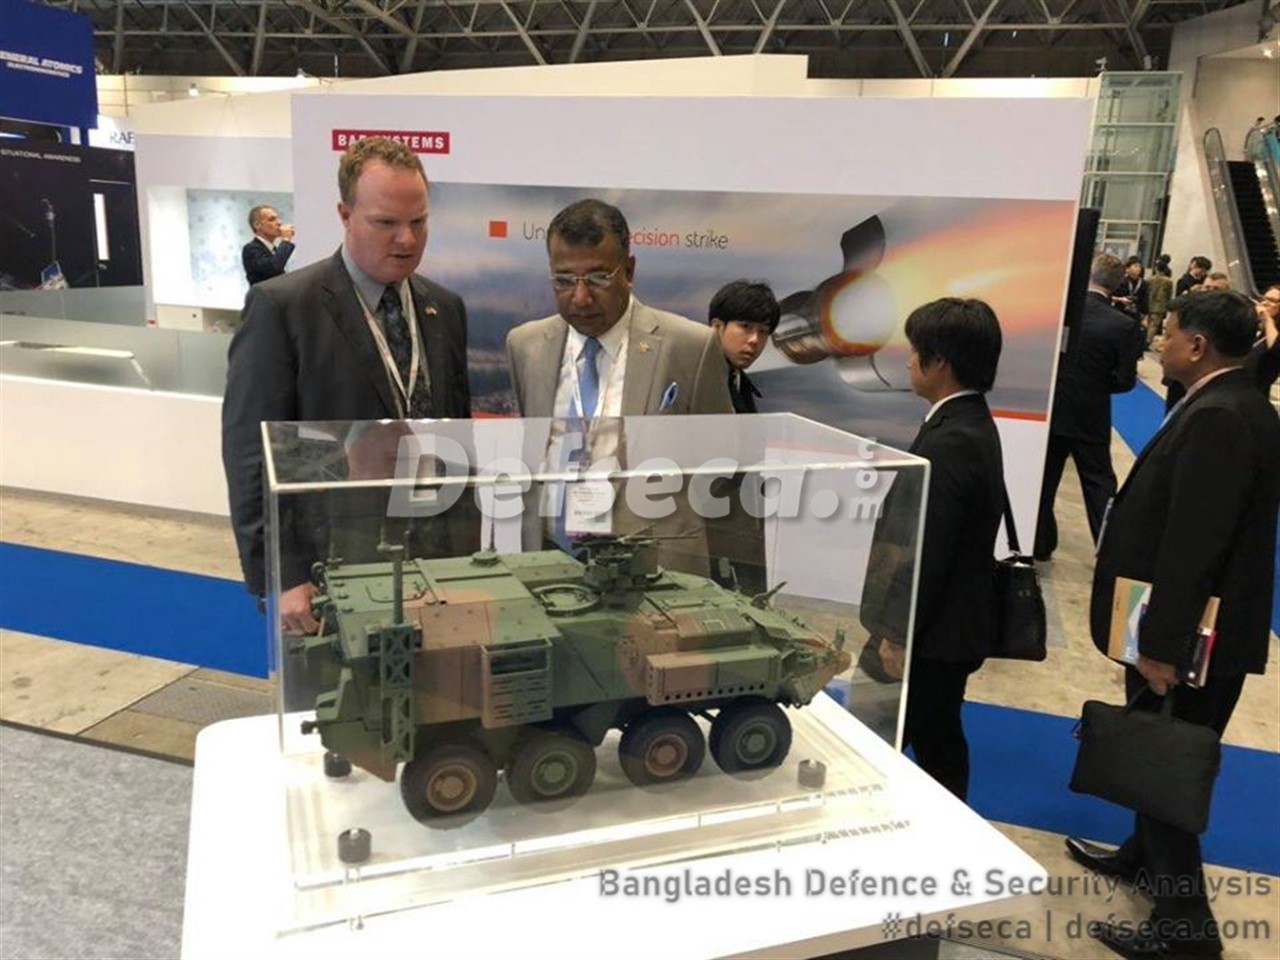 Bangladesh Army delegation at DSEI Japan 2019